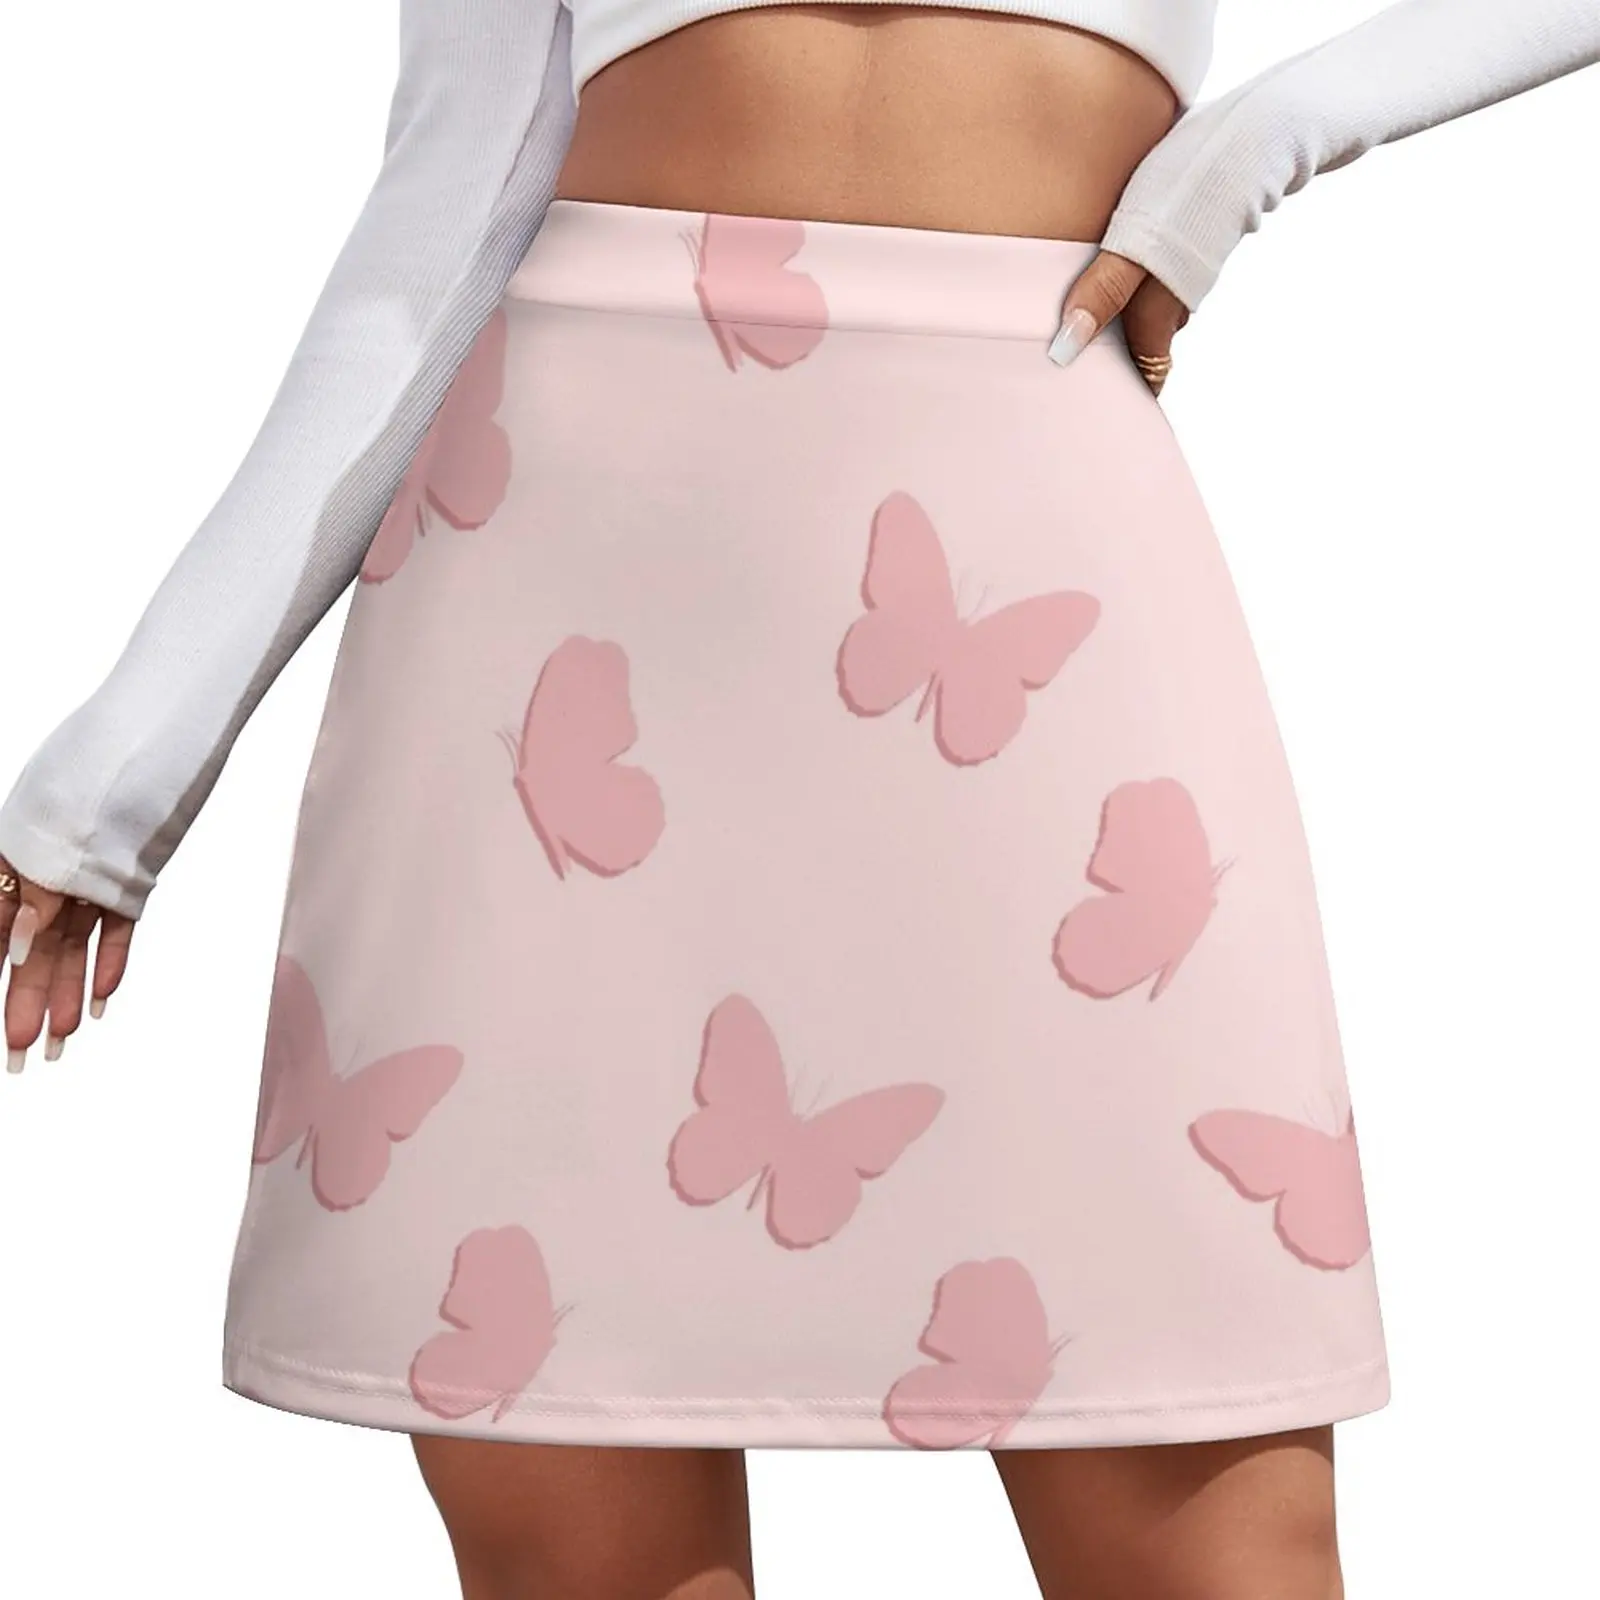 Pink Butterflies Mini Skirt Skirt shorts midi skirt for women